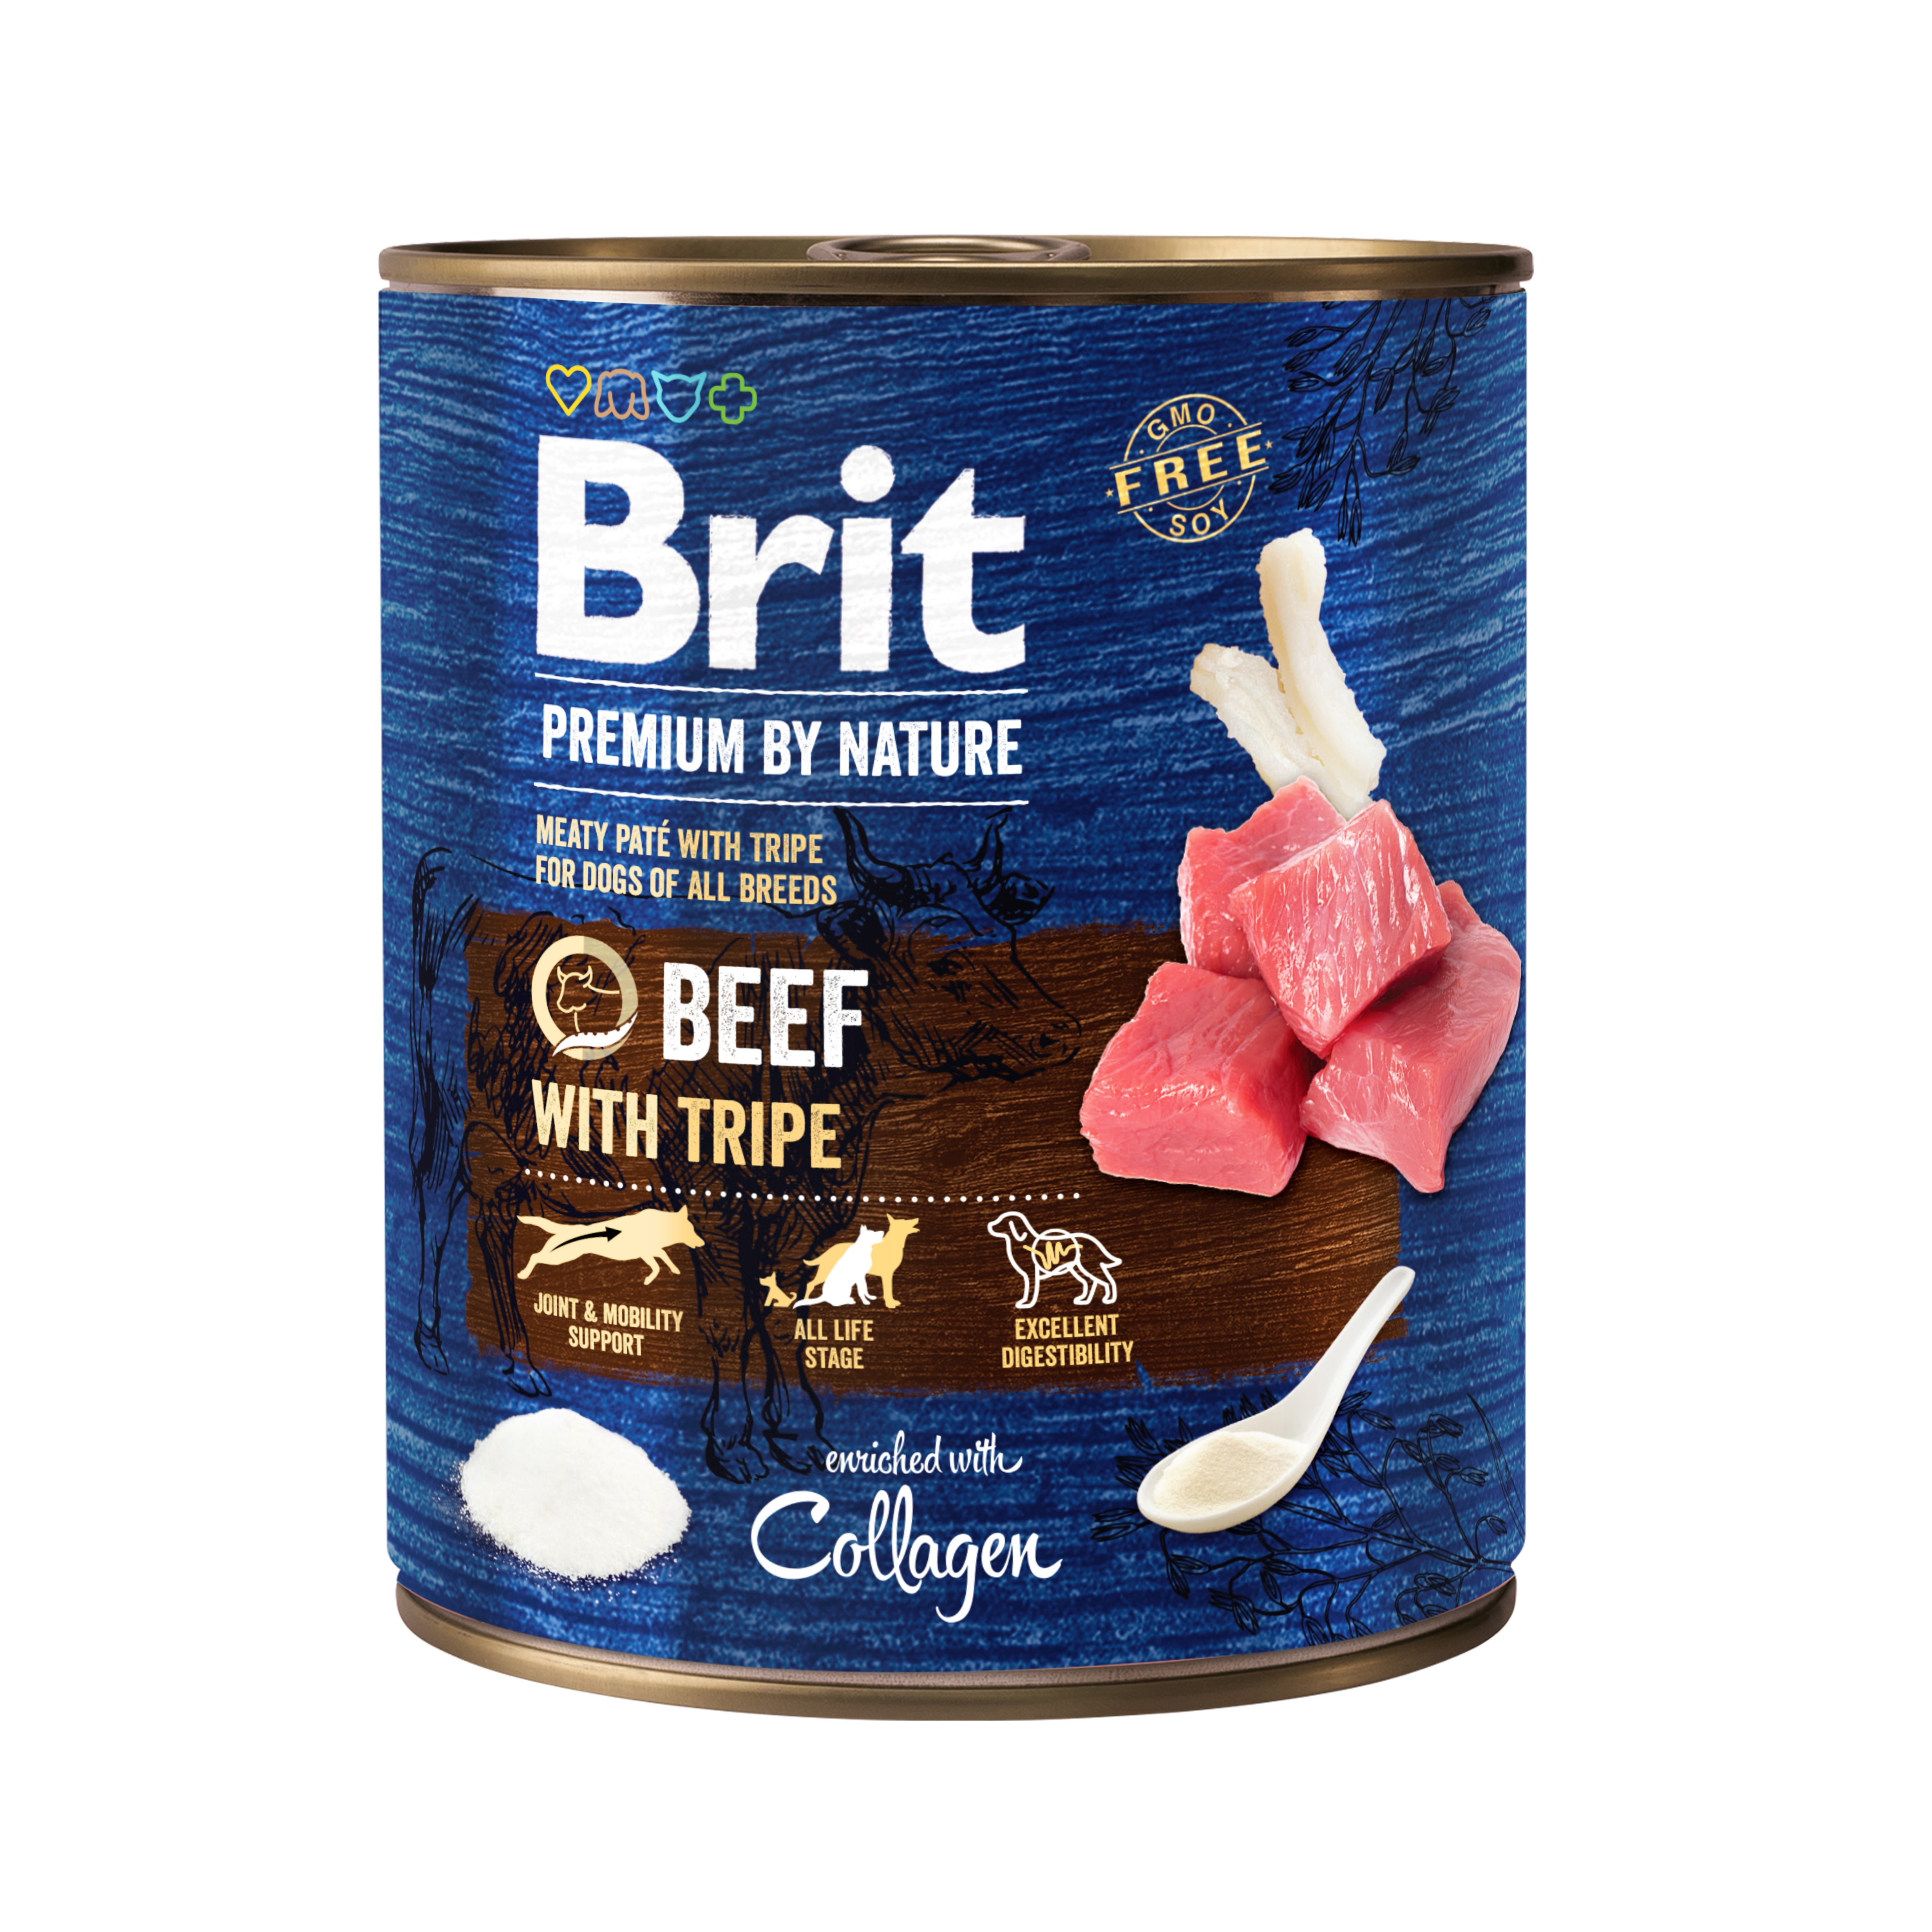 Беззерновий вологий корм для собак Brit Premium by Nature, яловичина з тельбухами, 800 г - фото 1